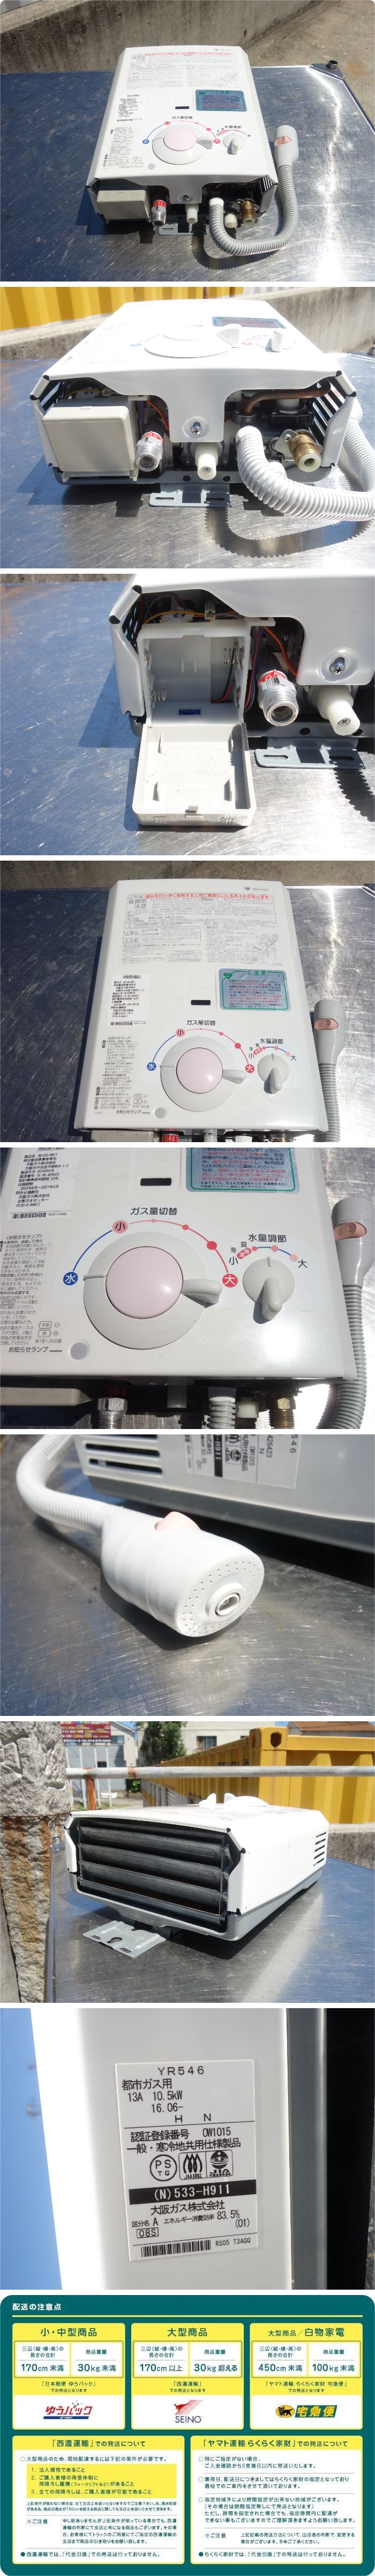 ガス湯沸かし器 大阪ガス 13A 給湯器(N)533-H921 2020年製 - 生活家電